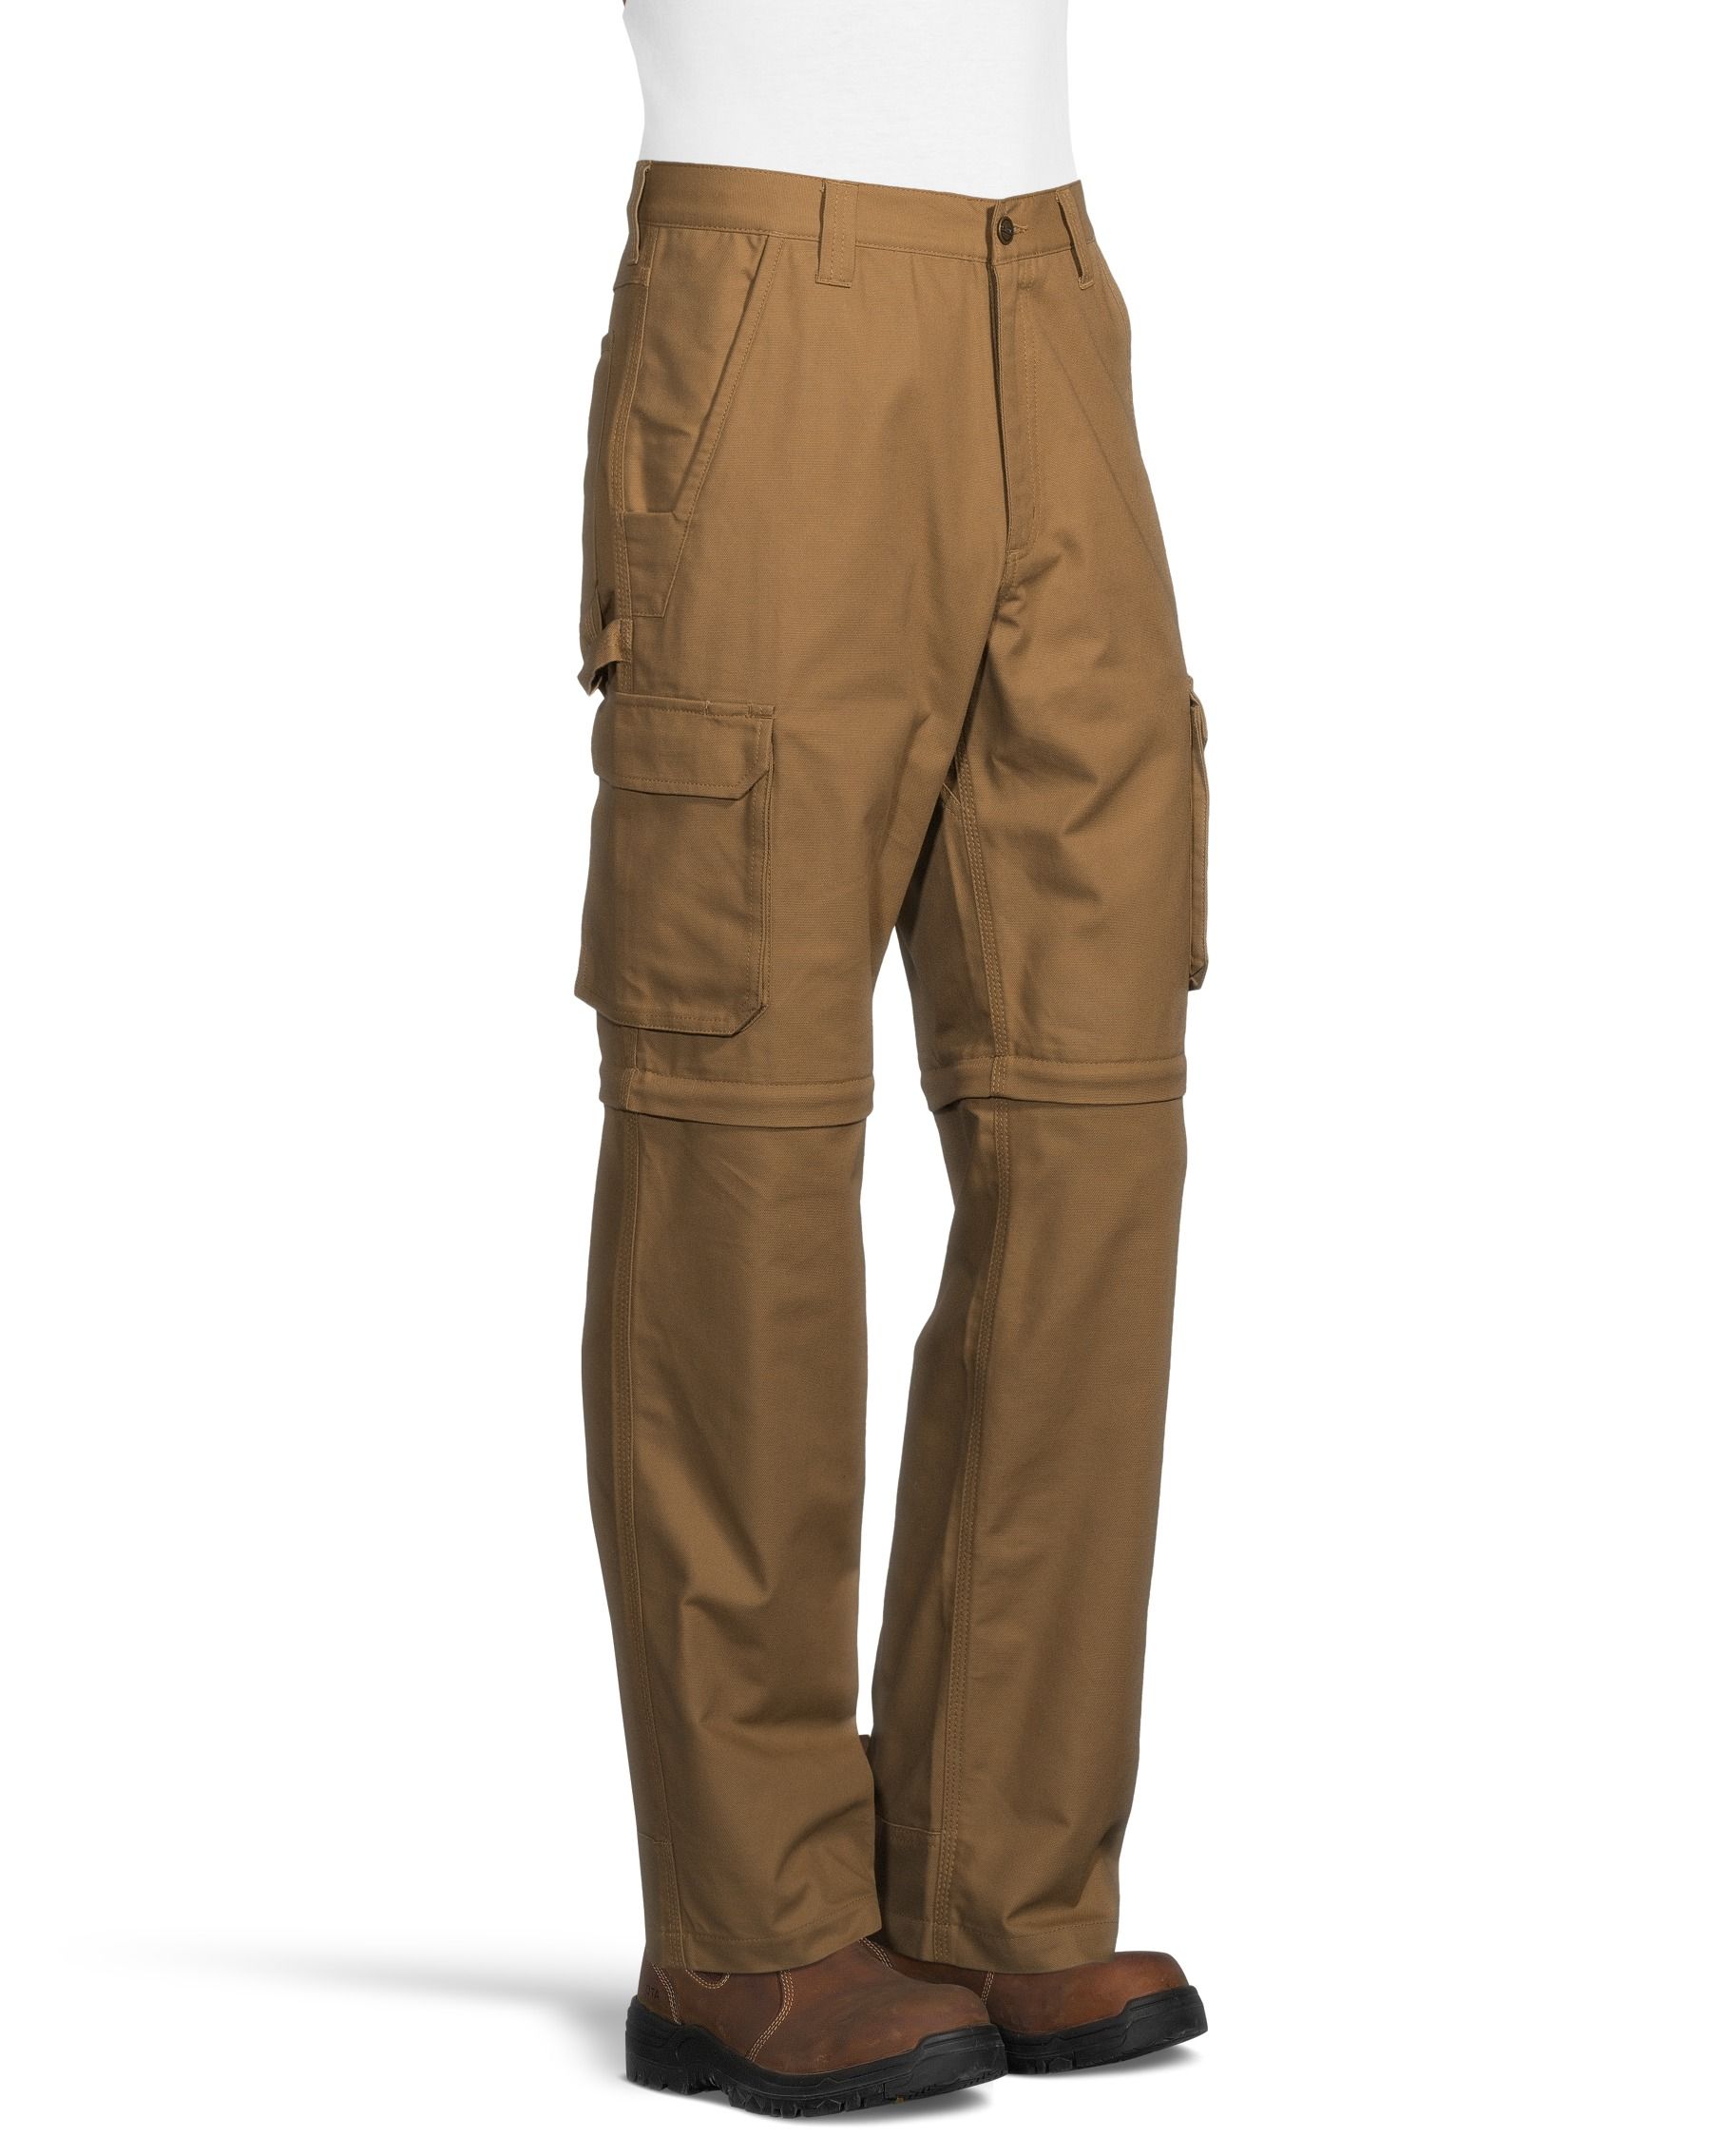  Juicy Trendz Work Pants for Men Construction Cordura